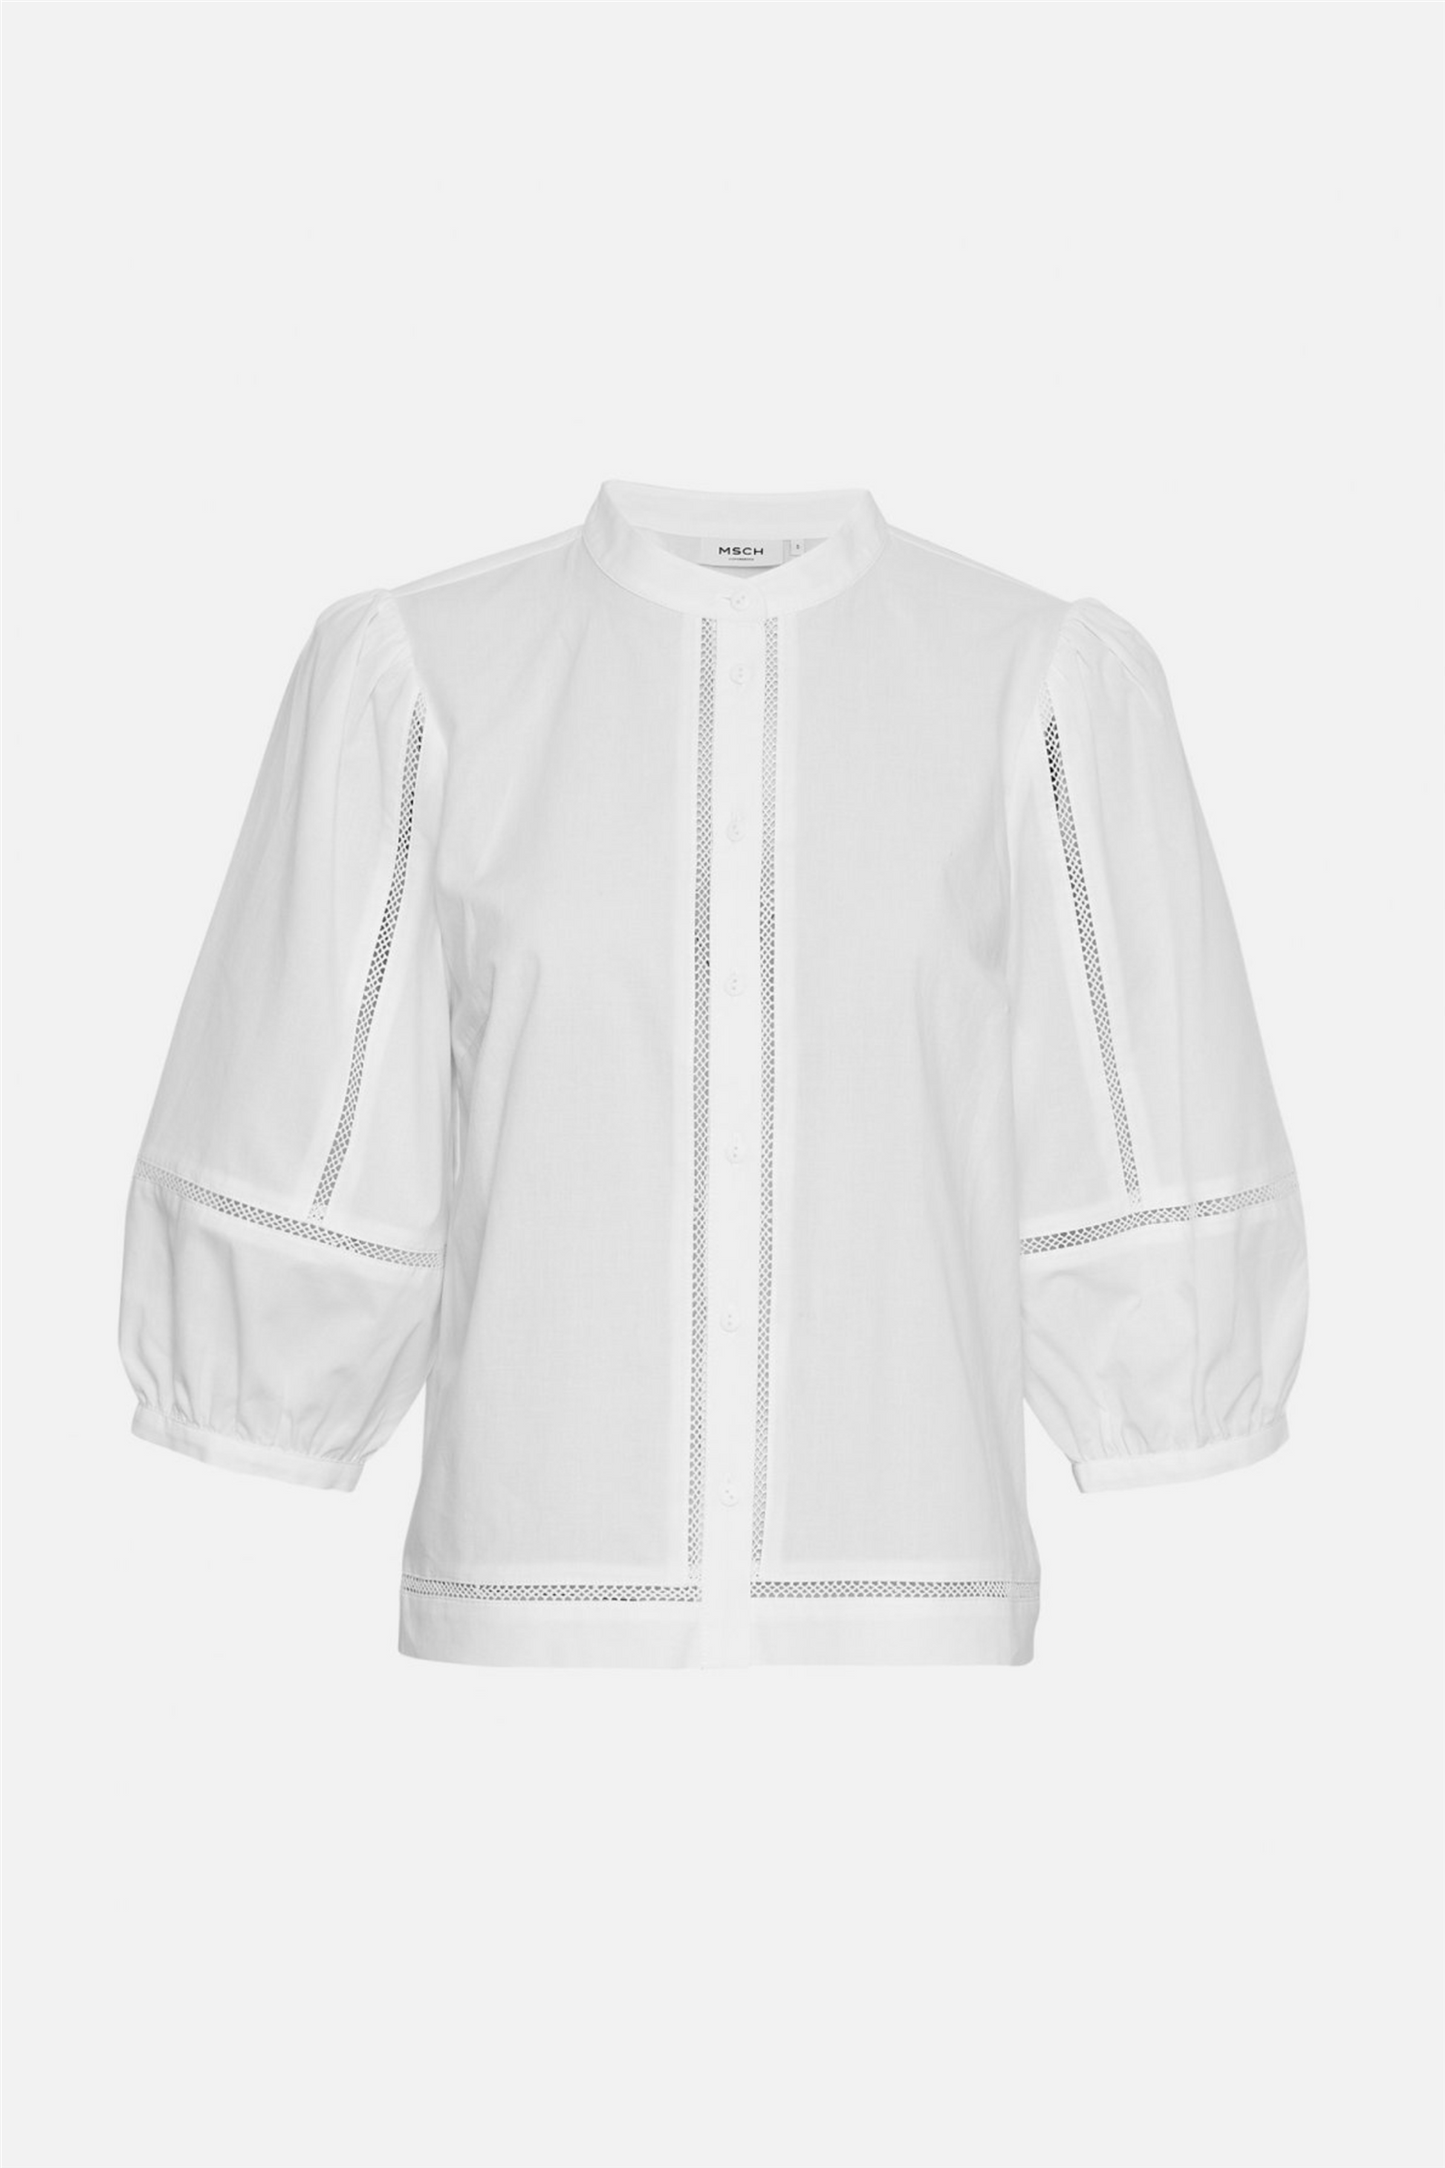 MSCHErendia 2/4 Shirt Bright White